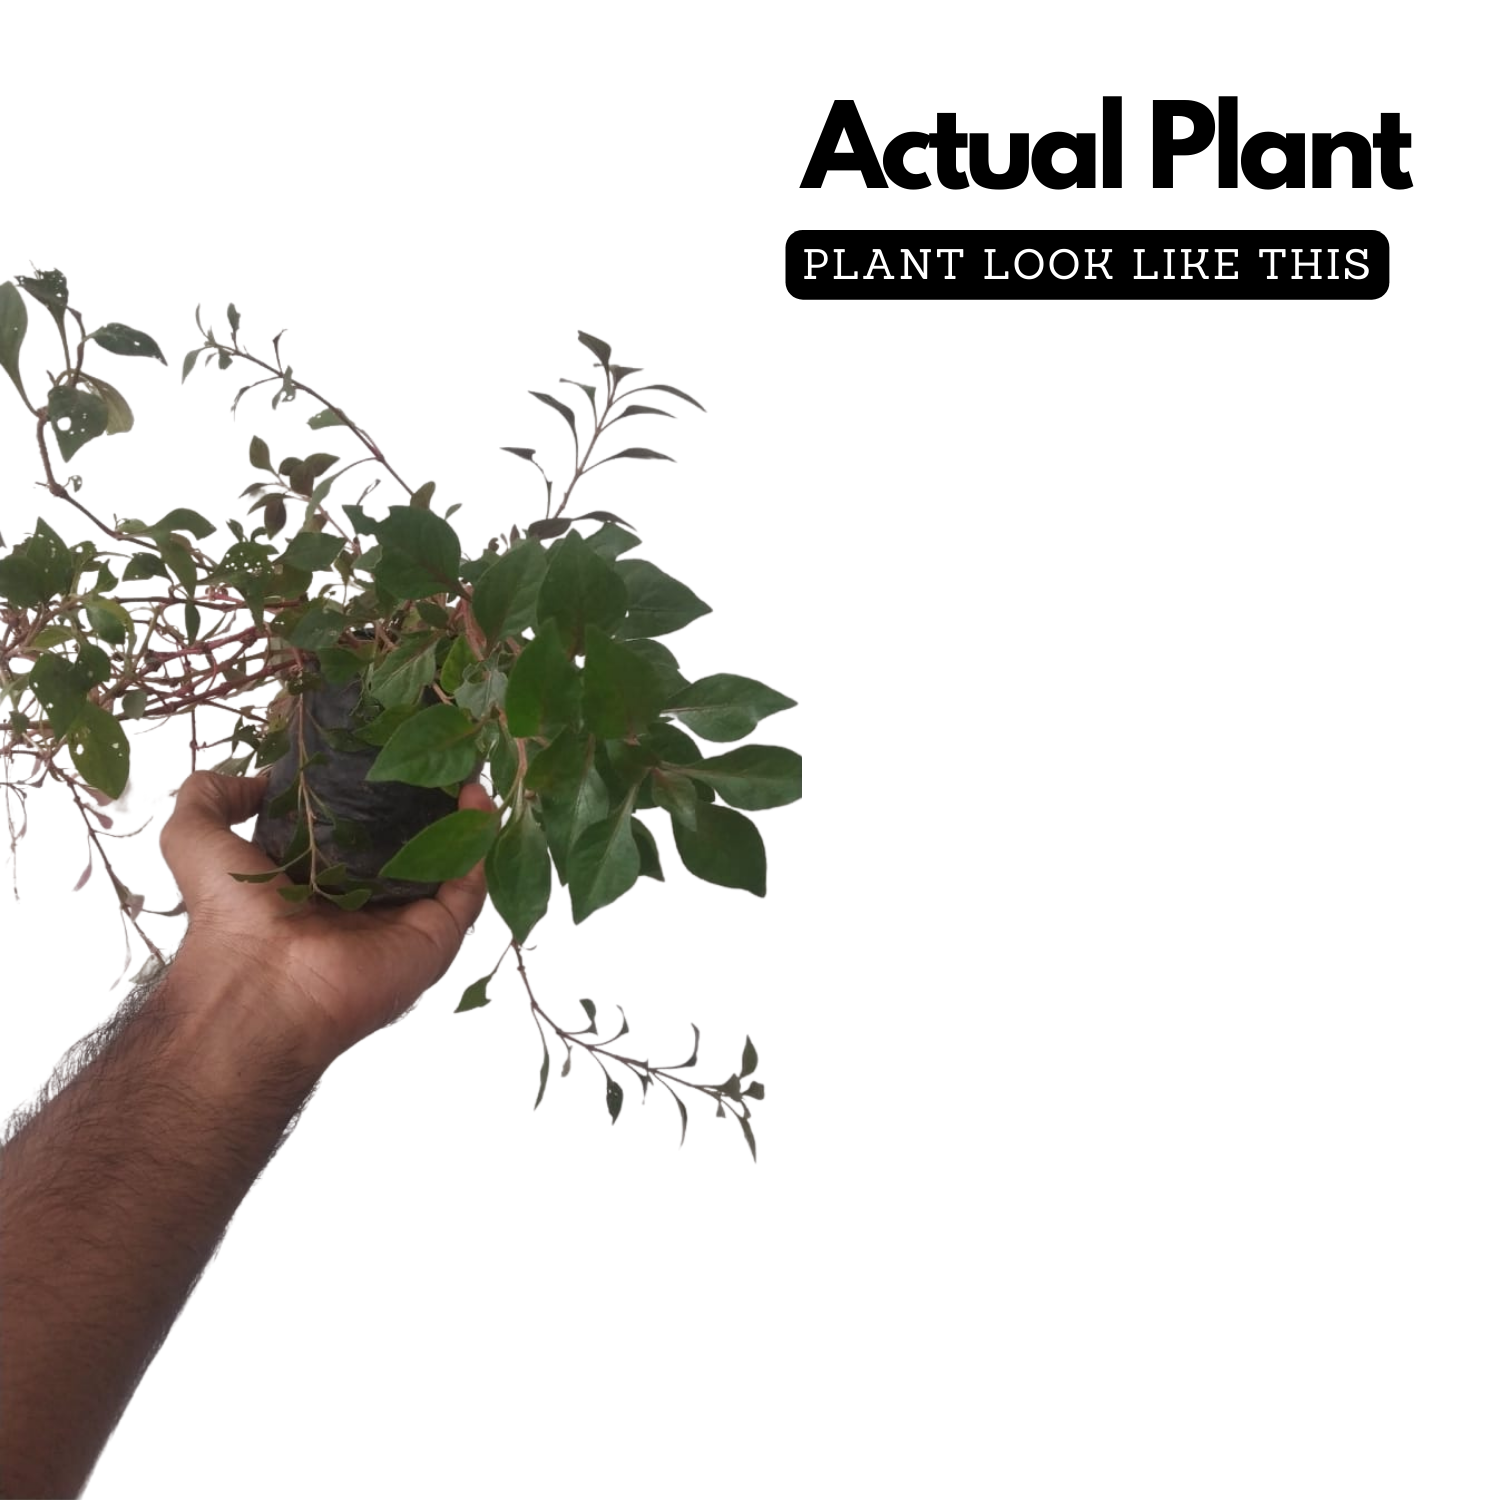 Ponnanganni Cheera / Dwarf Copperleaf spinach (Alternanthera sessilis) Medicinal Live Plant (Home & Garden)